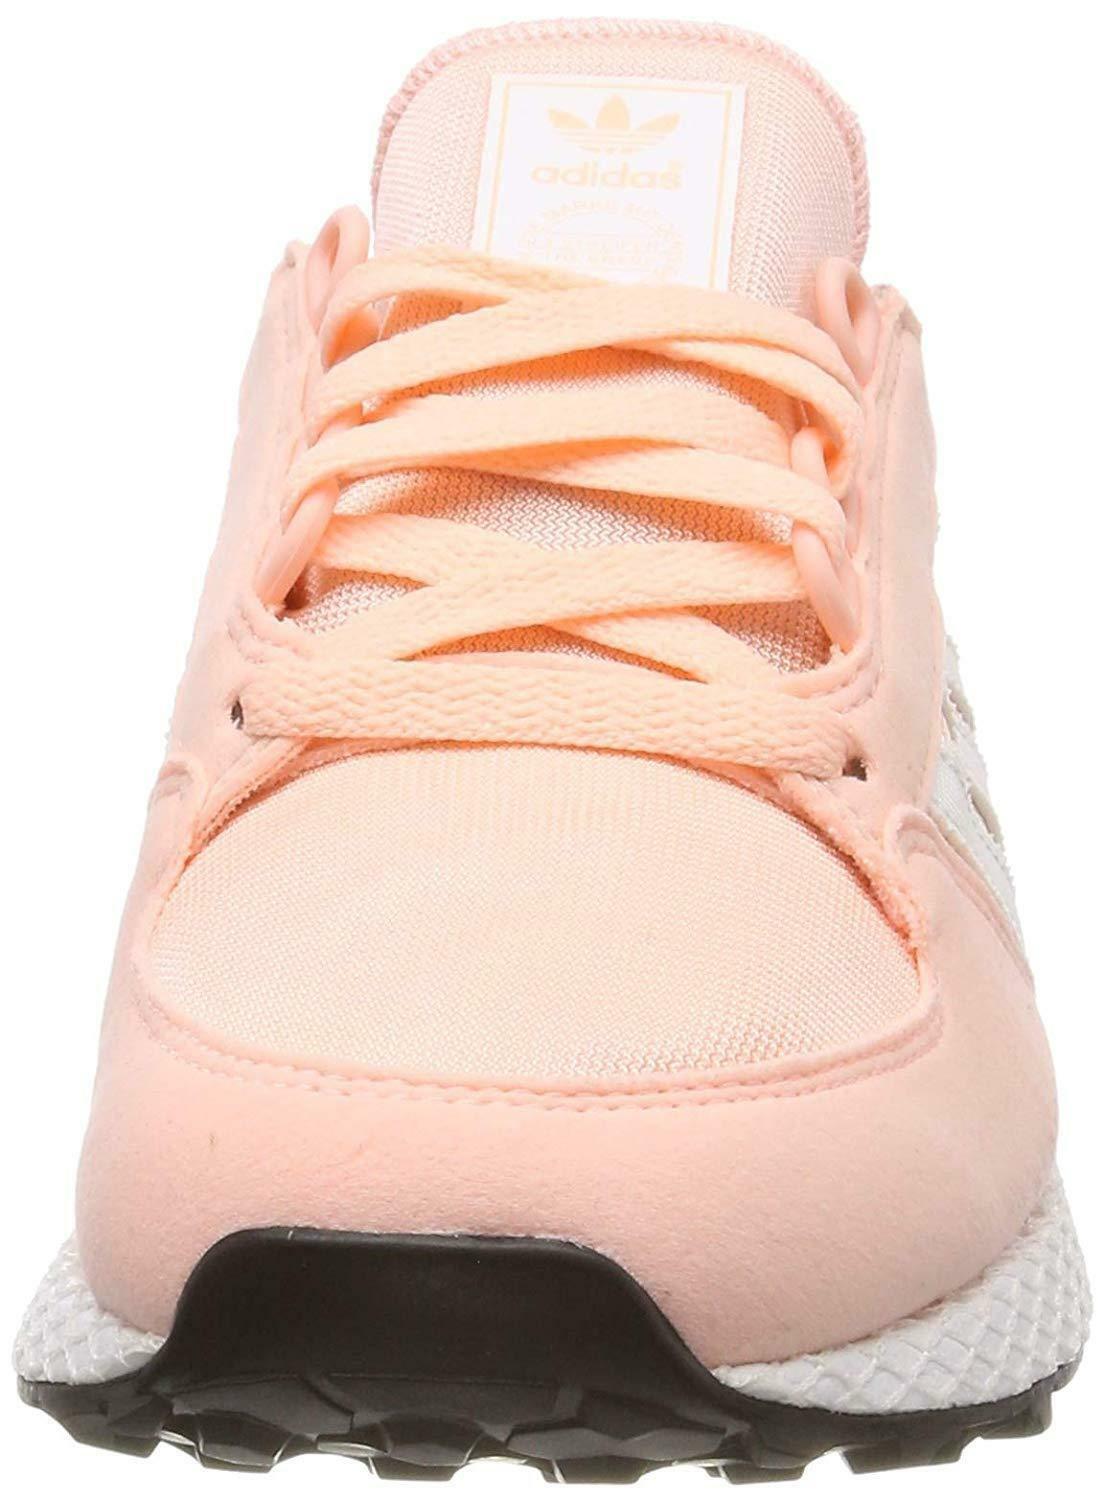 adidas originals adidas forest groove j scarpe sportive bambina rosa f34325